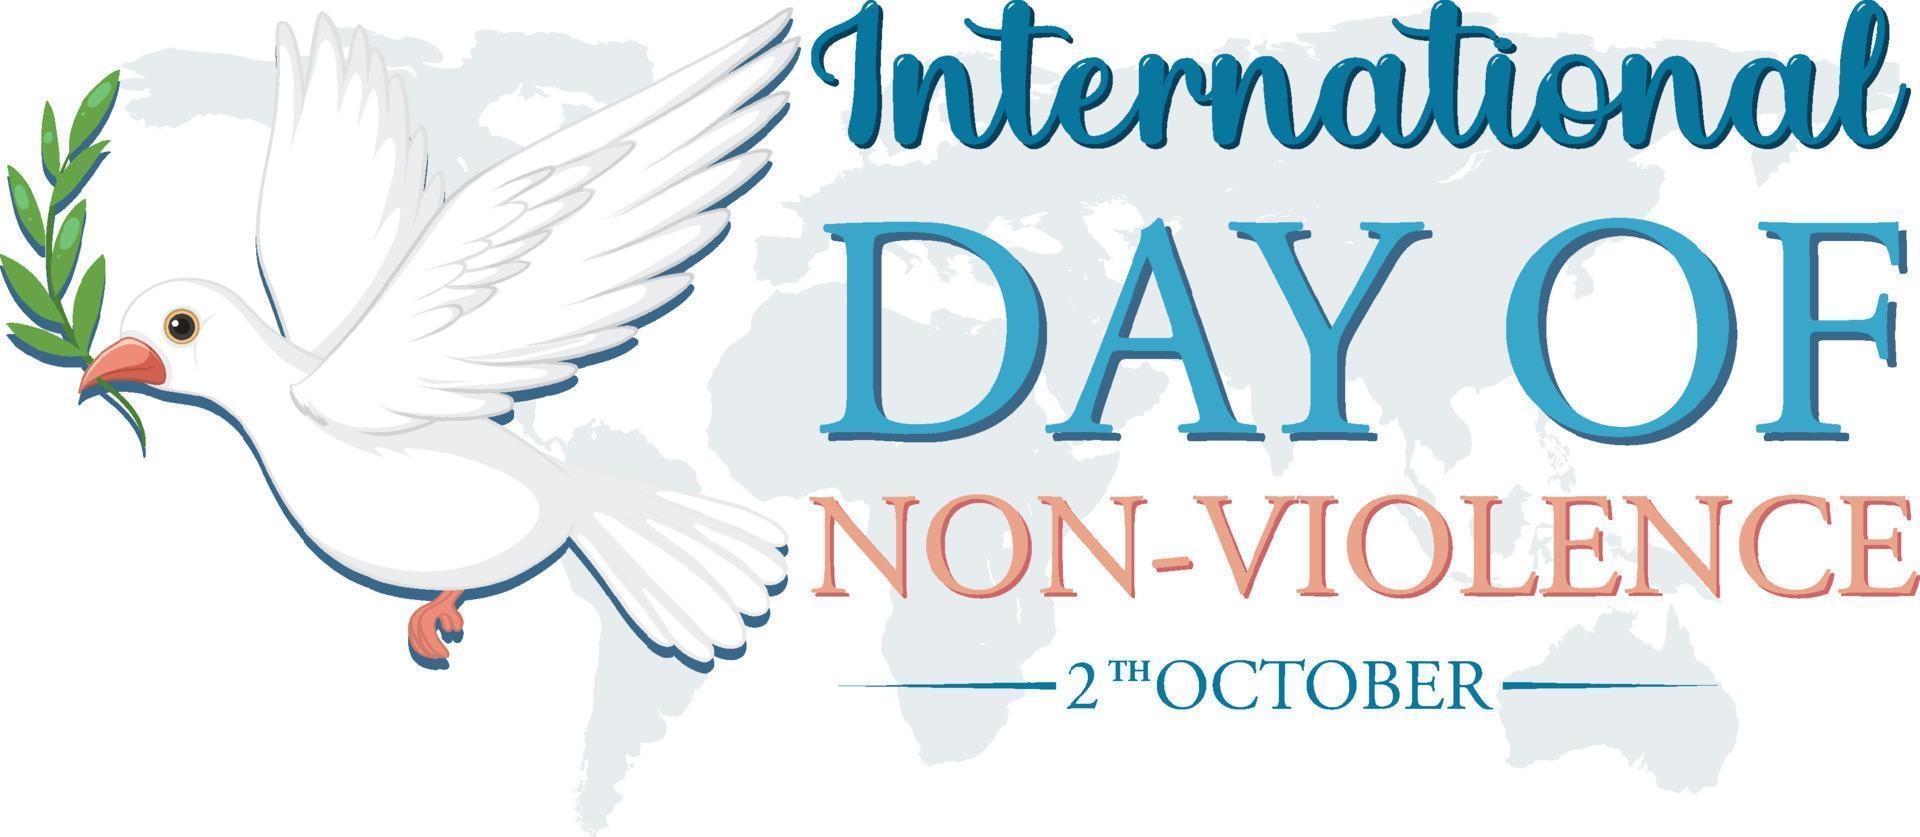 affisch för internationella dagen för icke-våld vektor